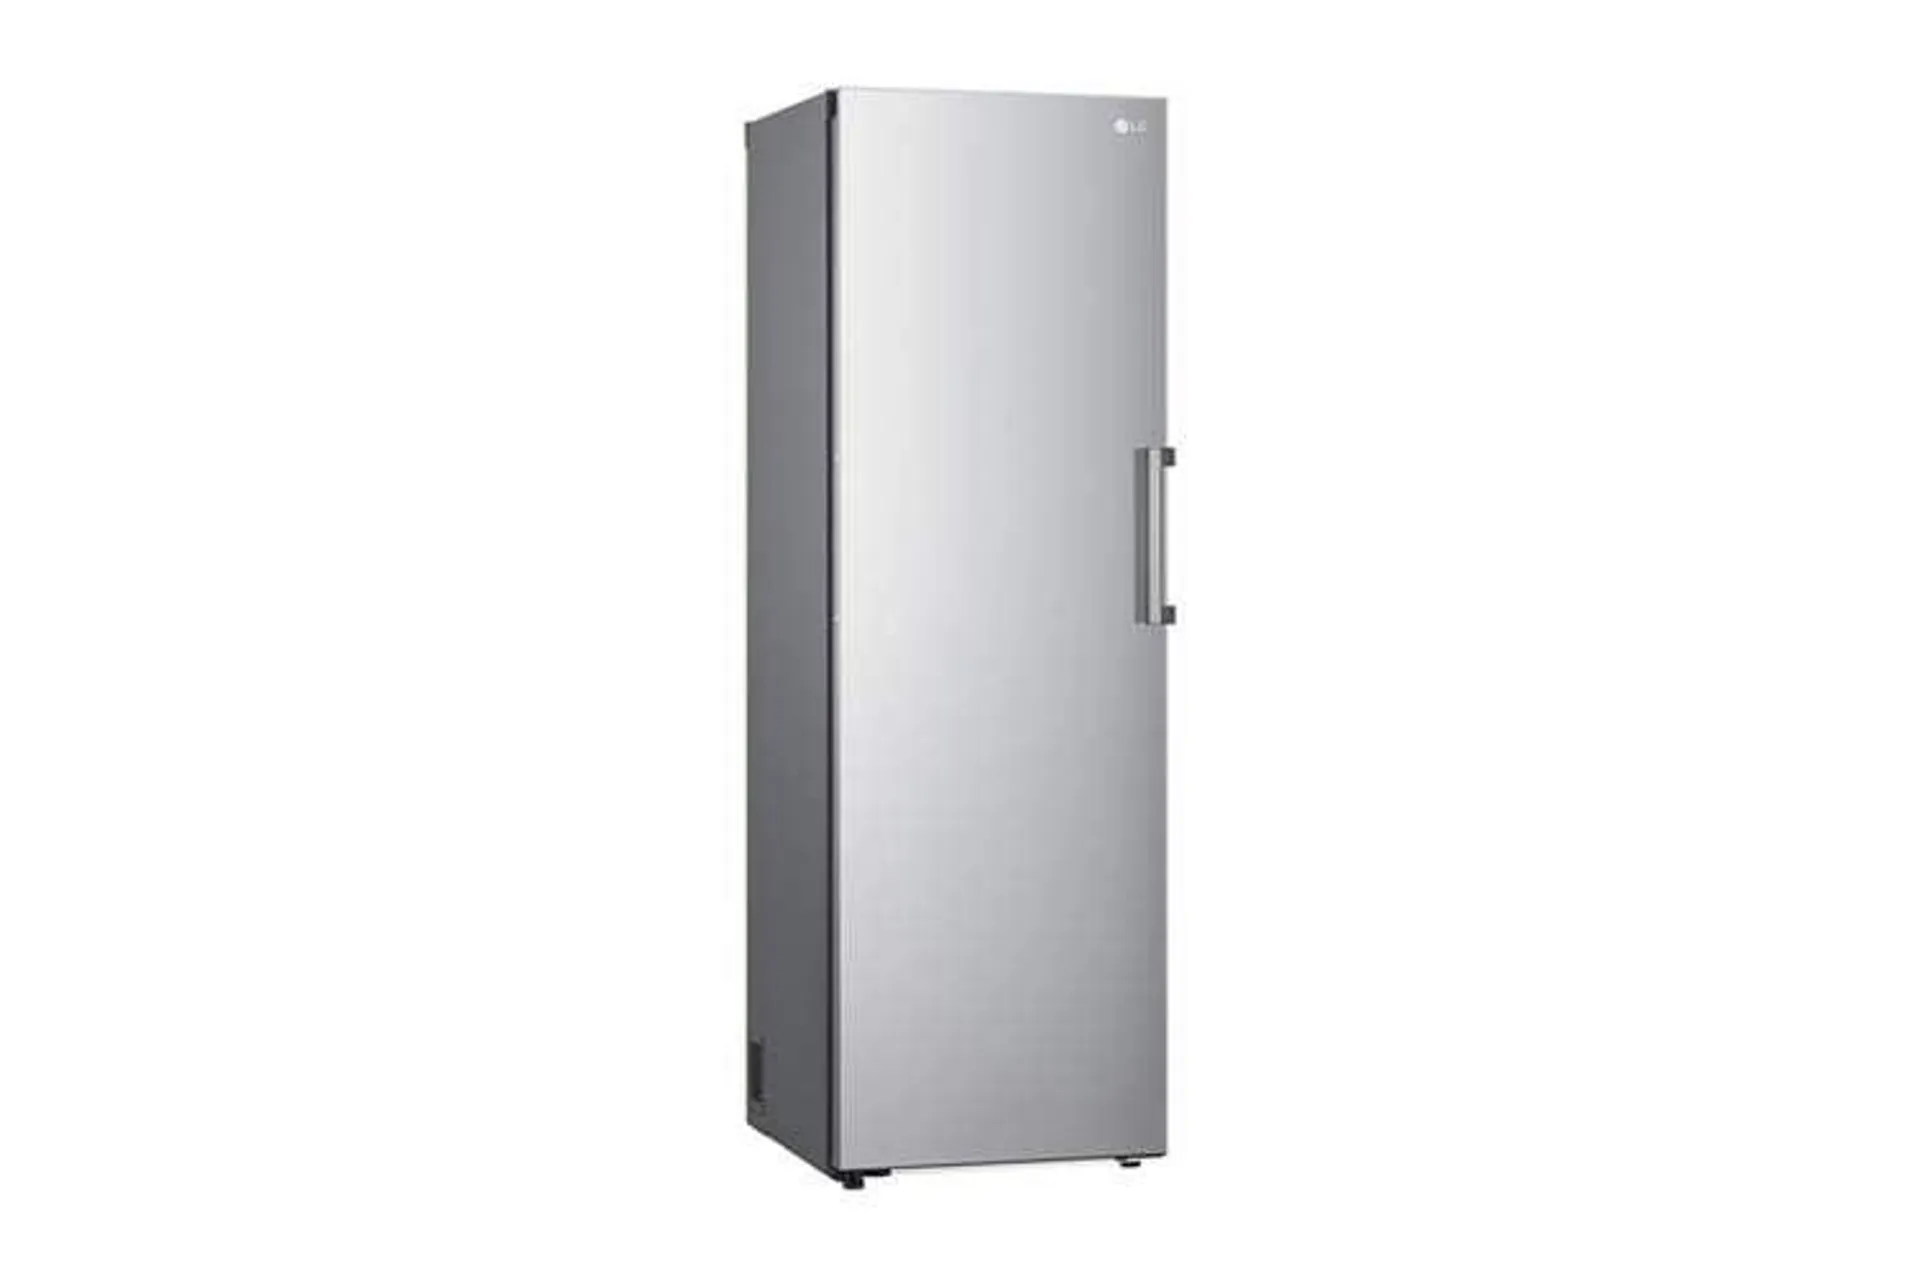 Congelador Vertical LG GFT41PZGSZ